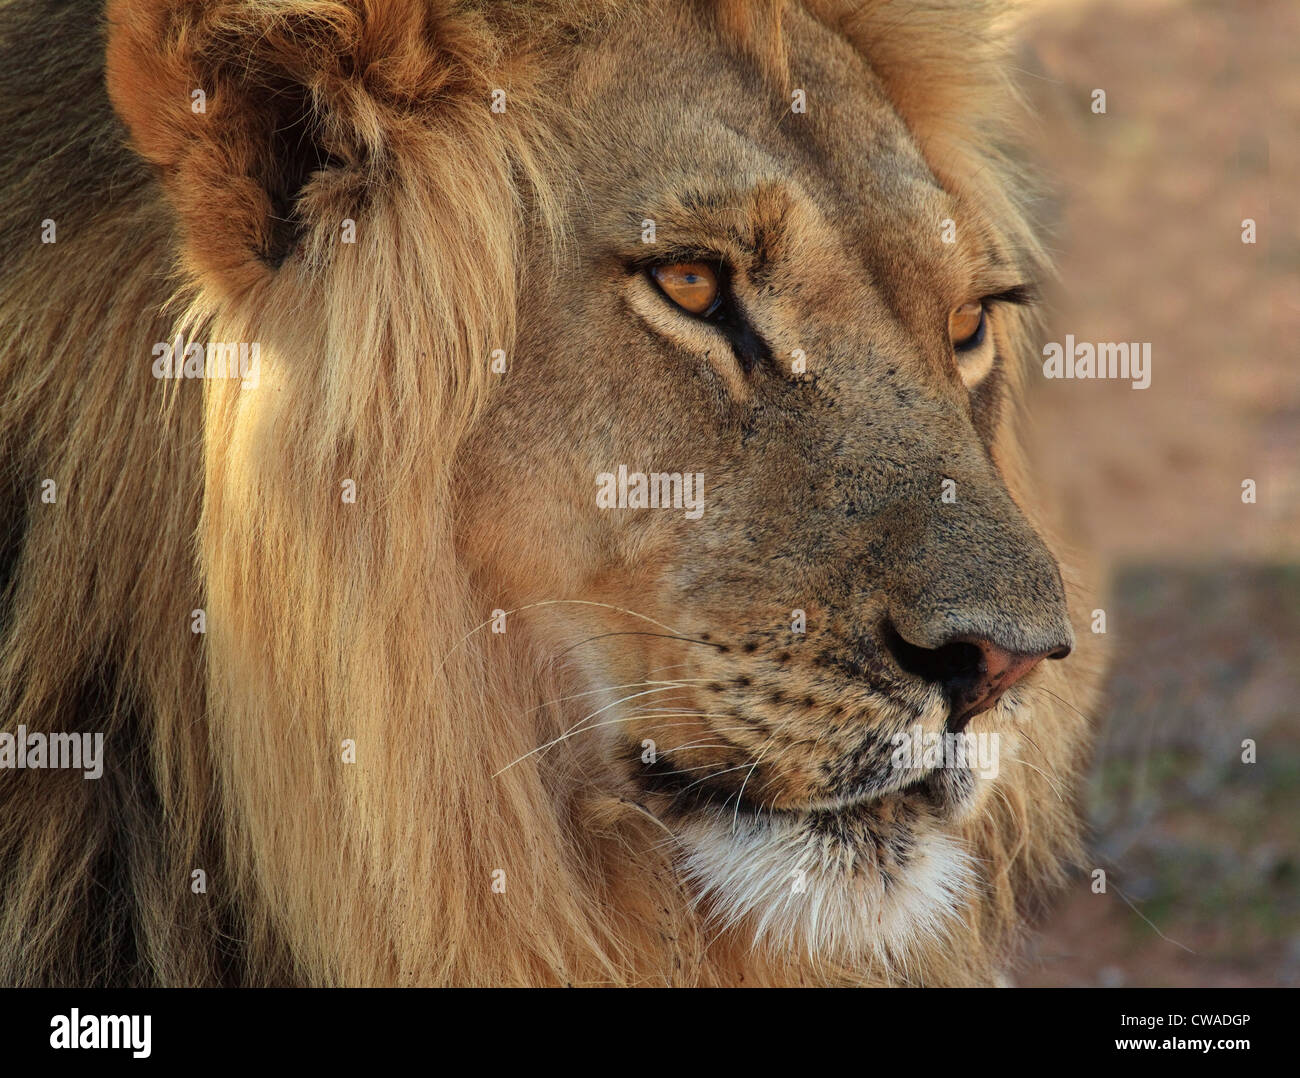 Lion portrait, Kgalagadi Transfrontier Park, Africa Stock Photo